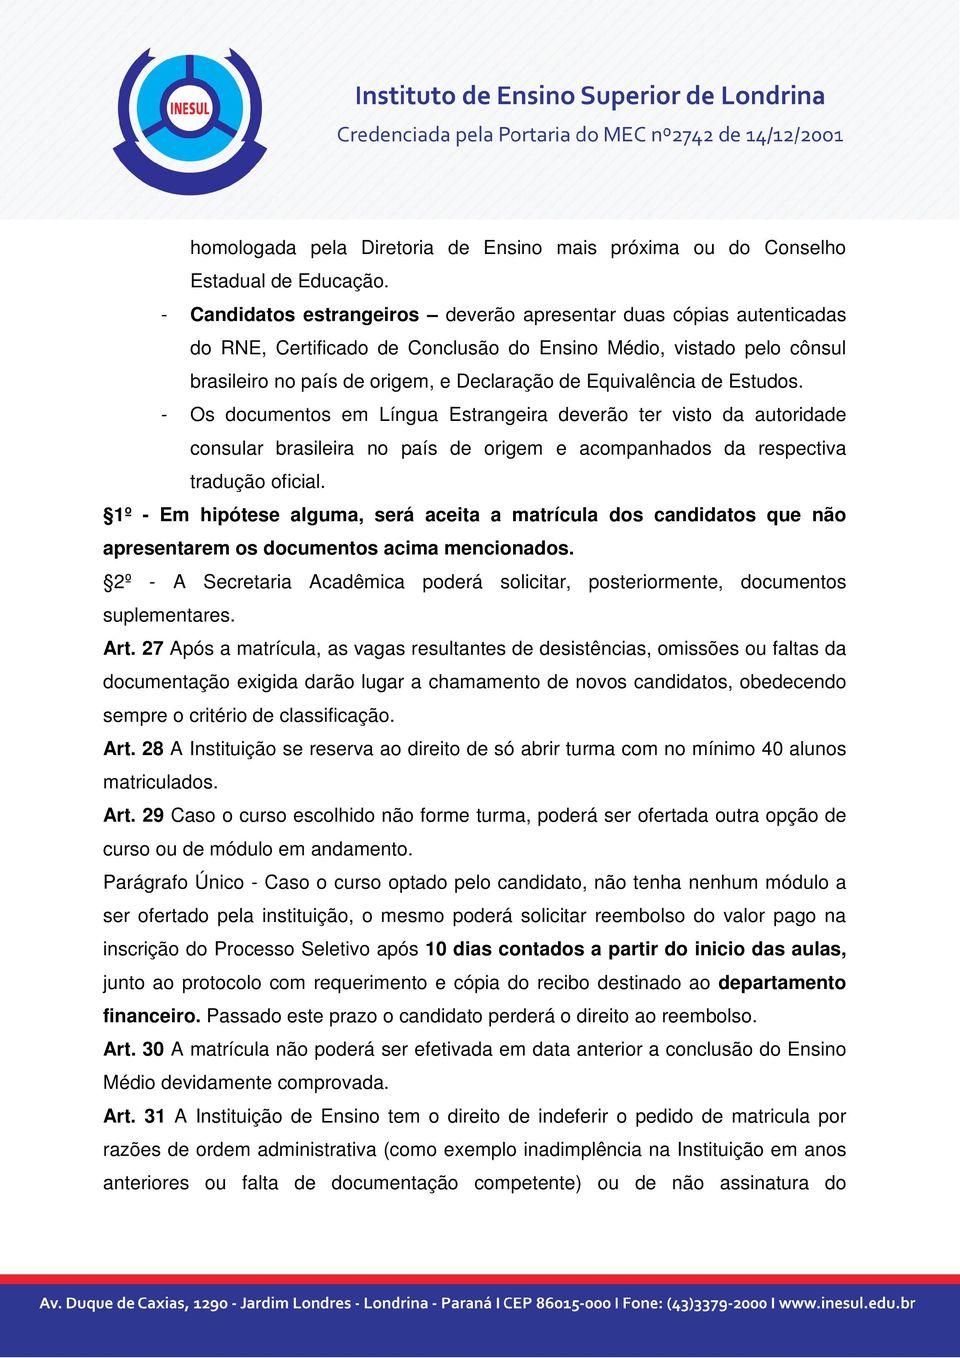 de Estudos. - Os documentos em Língua Estrangeira deverão ter visto da autoridade consular brasileira no país de origem e acompanhados da respectiva tradução oficial.